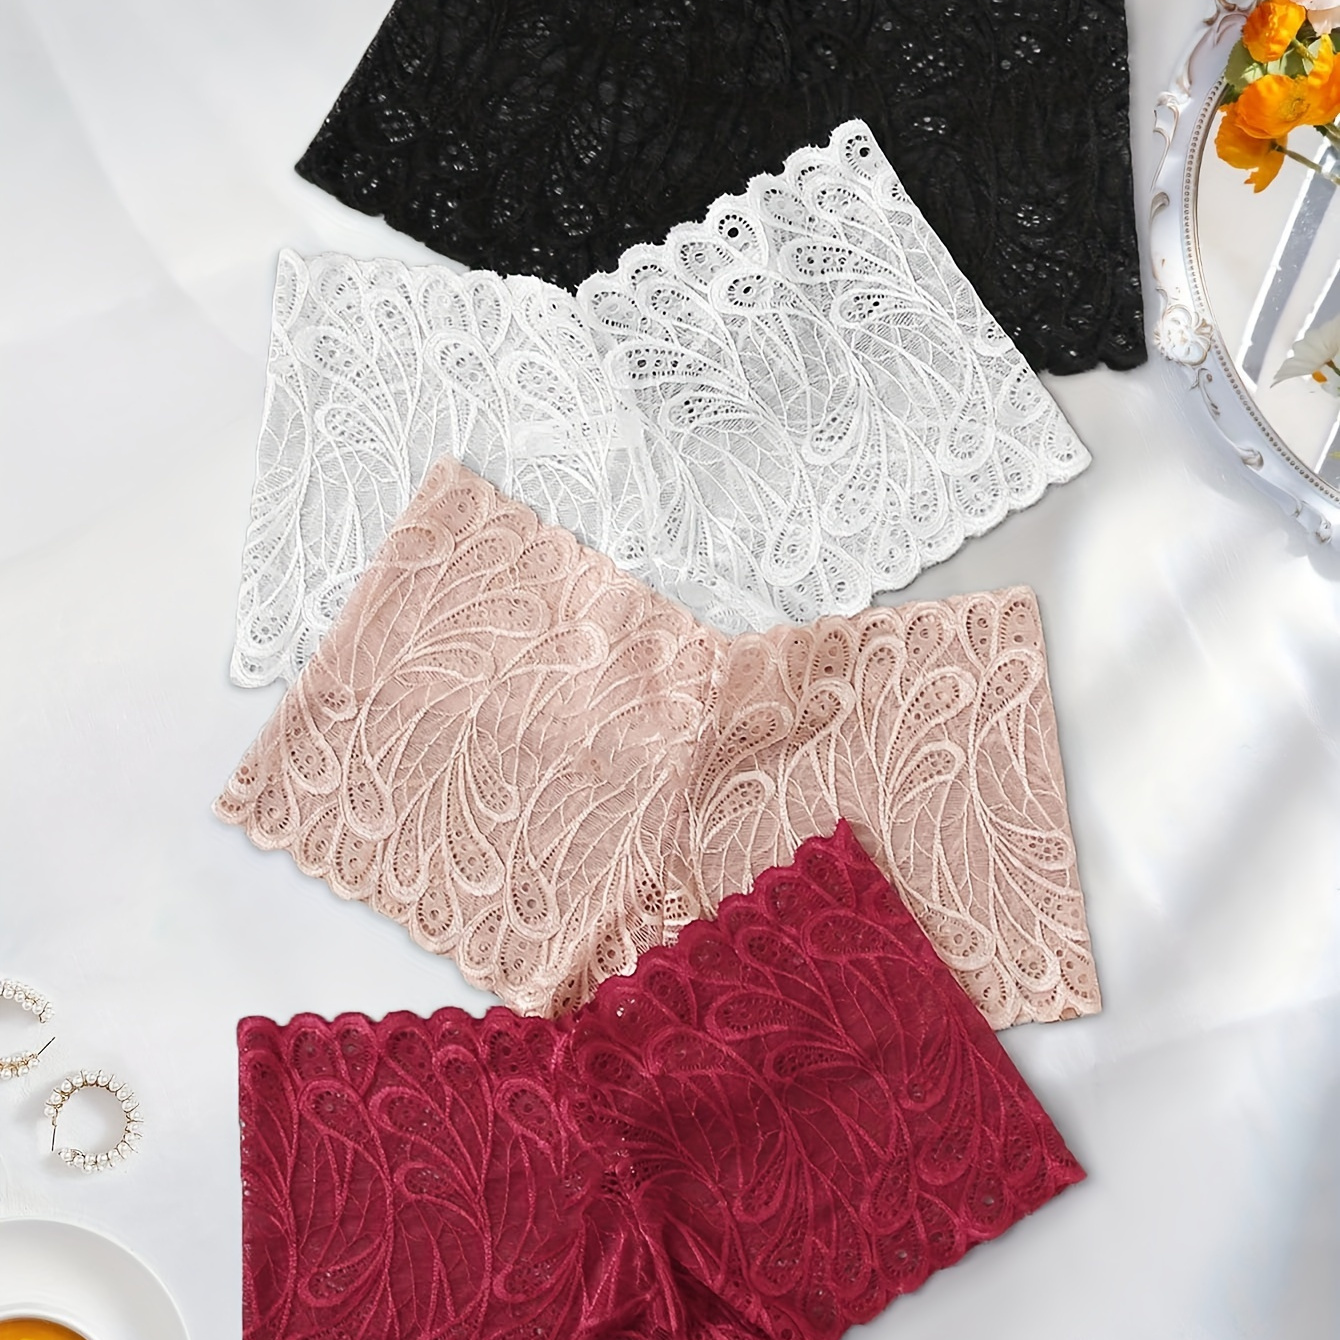 

4pcs Floral Lace Boyshort Panties, Soft & Comfy Stretchy Intimates Panties, Women's Lingerie & Underwear